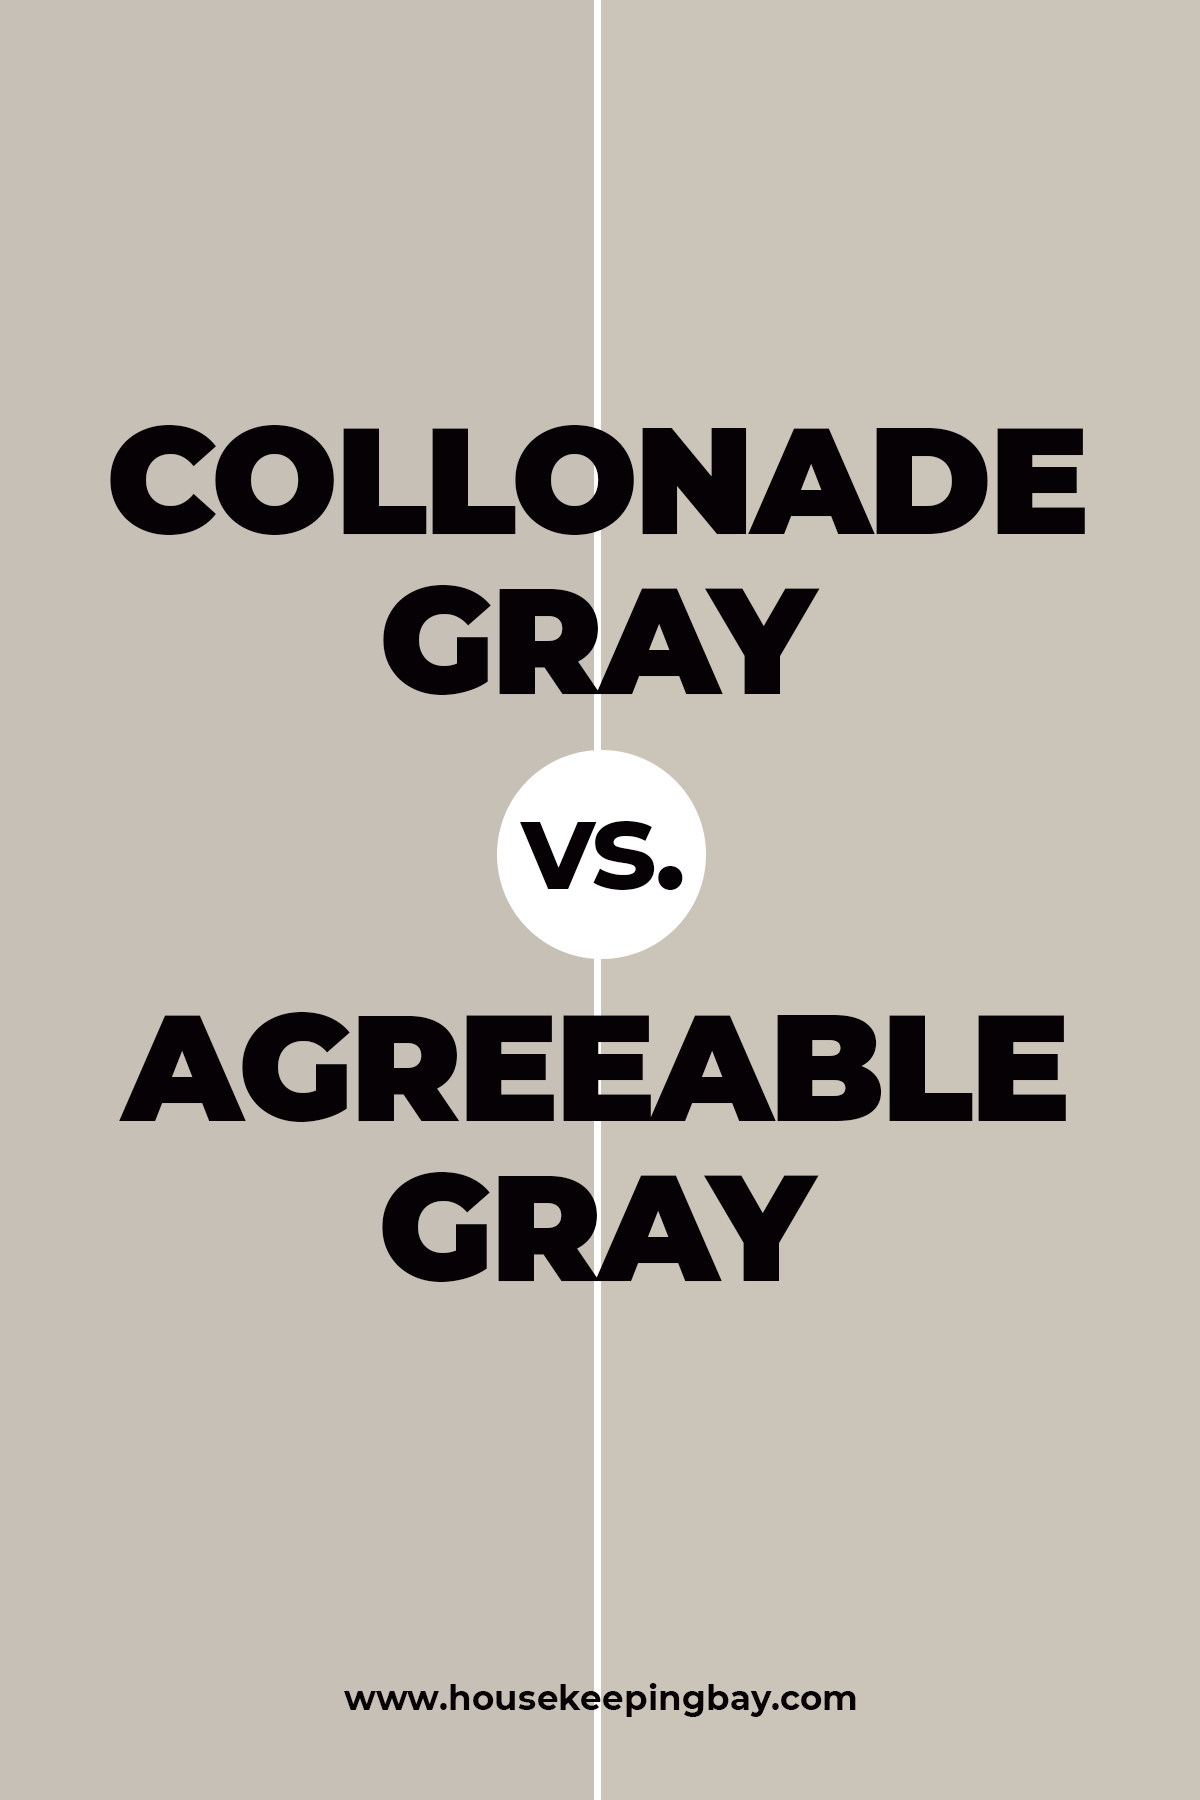 Collonade Gray vs. Agreeable Gray